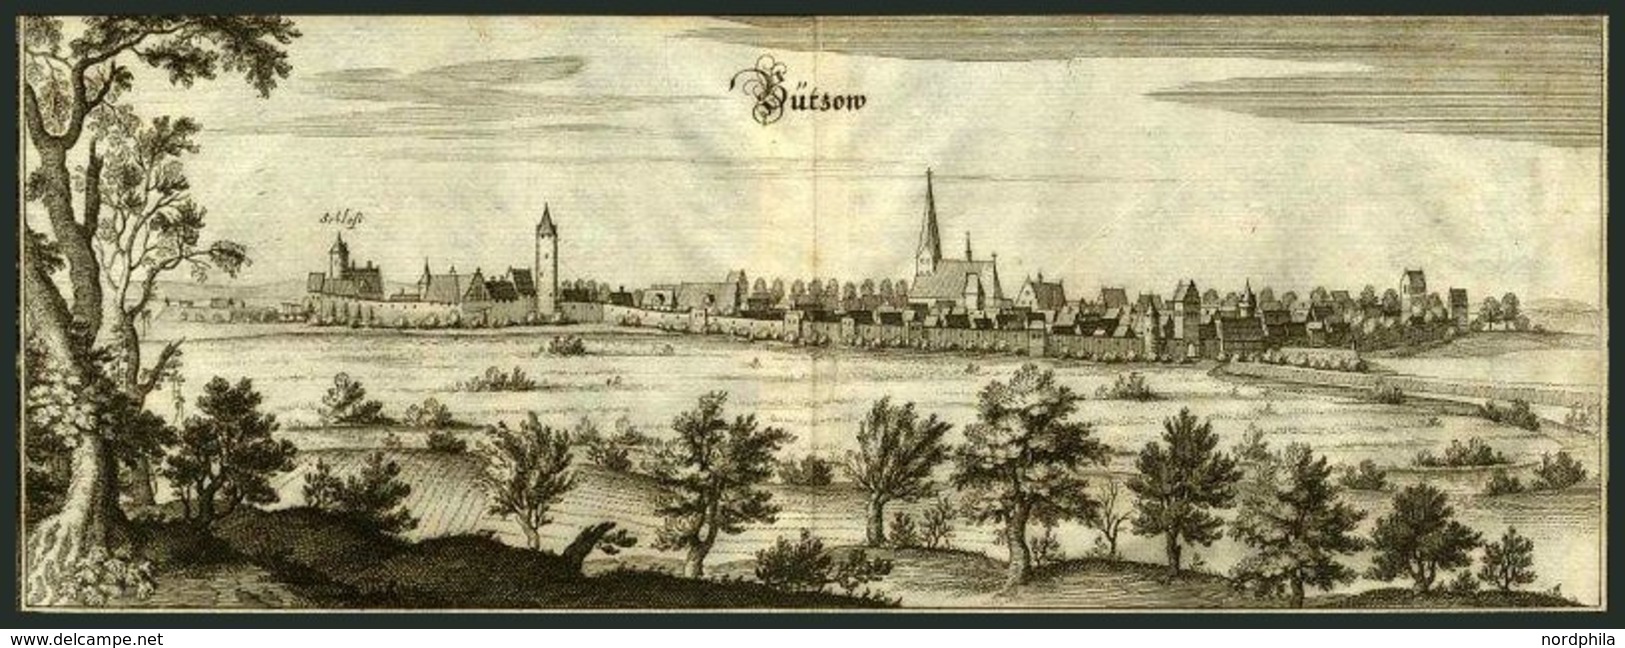 BUTZOW, Gesamtansicht, Kupferstich Von Merian Um 1645 - Lithographies